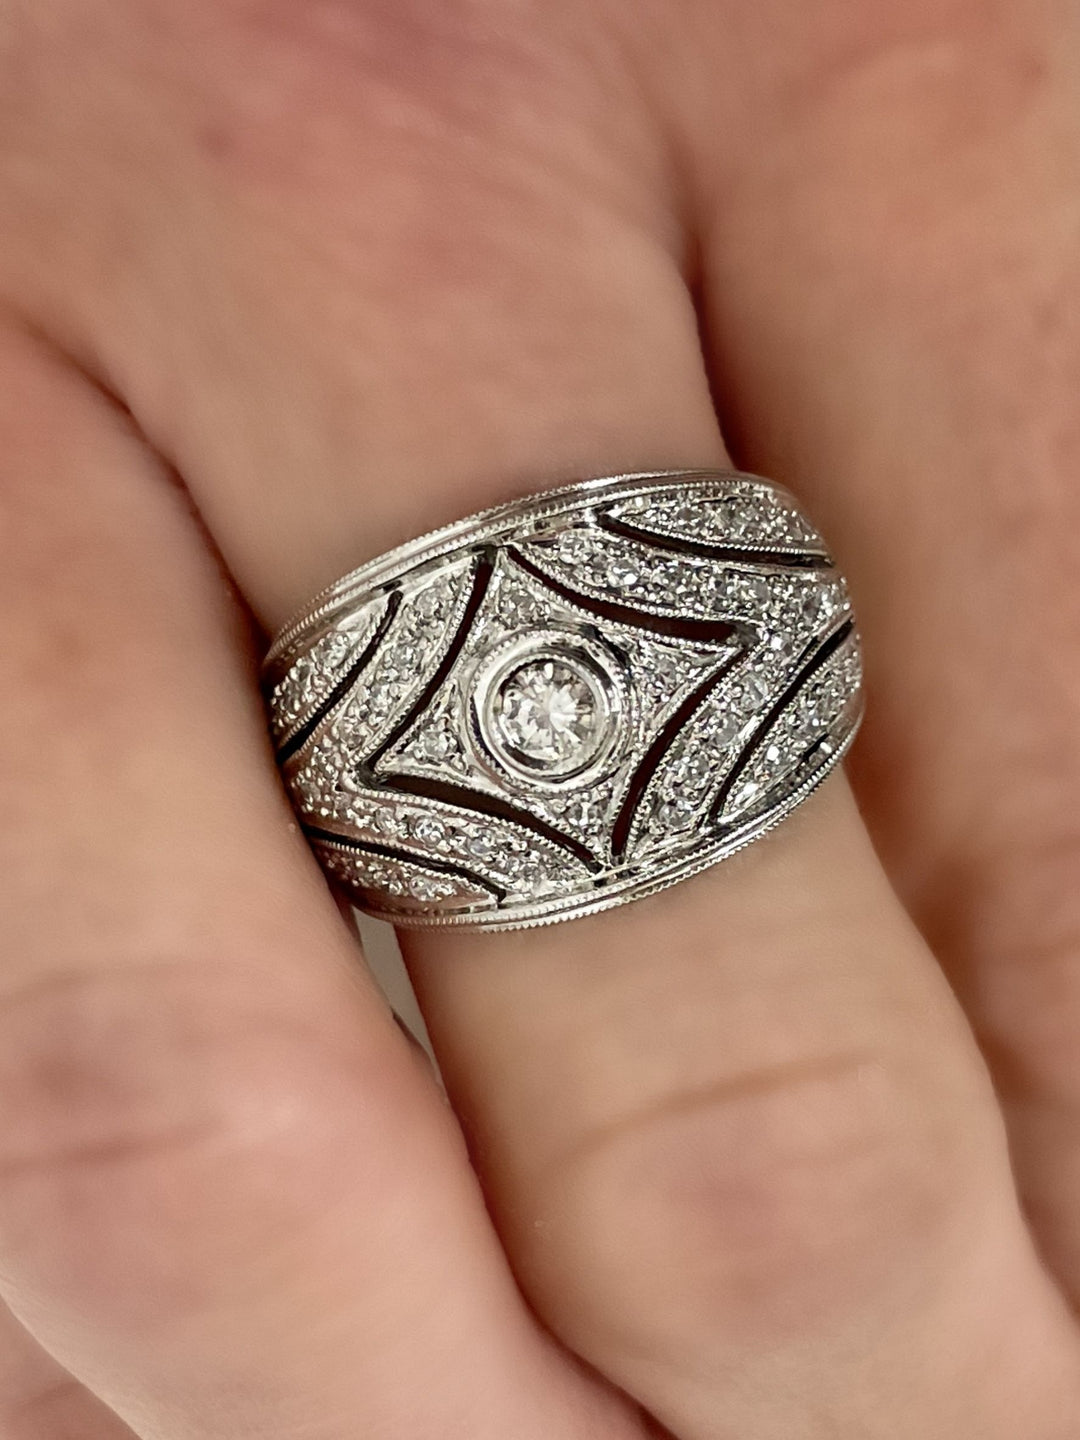 14K White Gold Vintage-Inspired Natural Diamond Ring - on finger